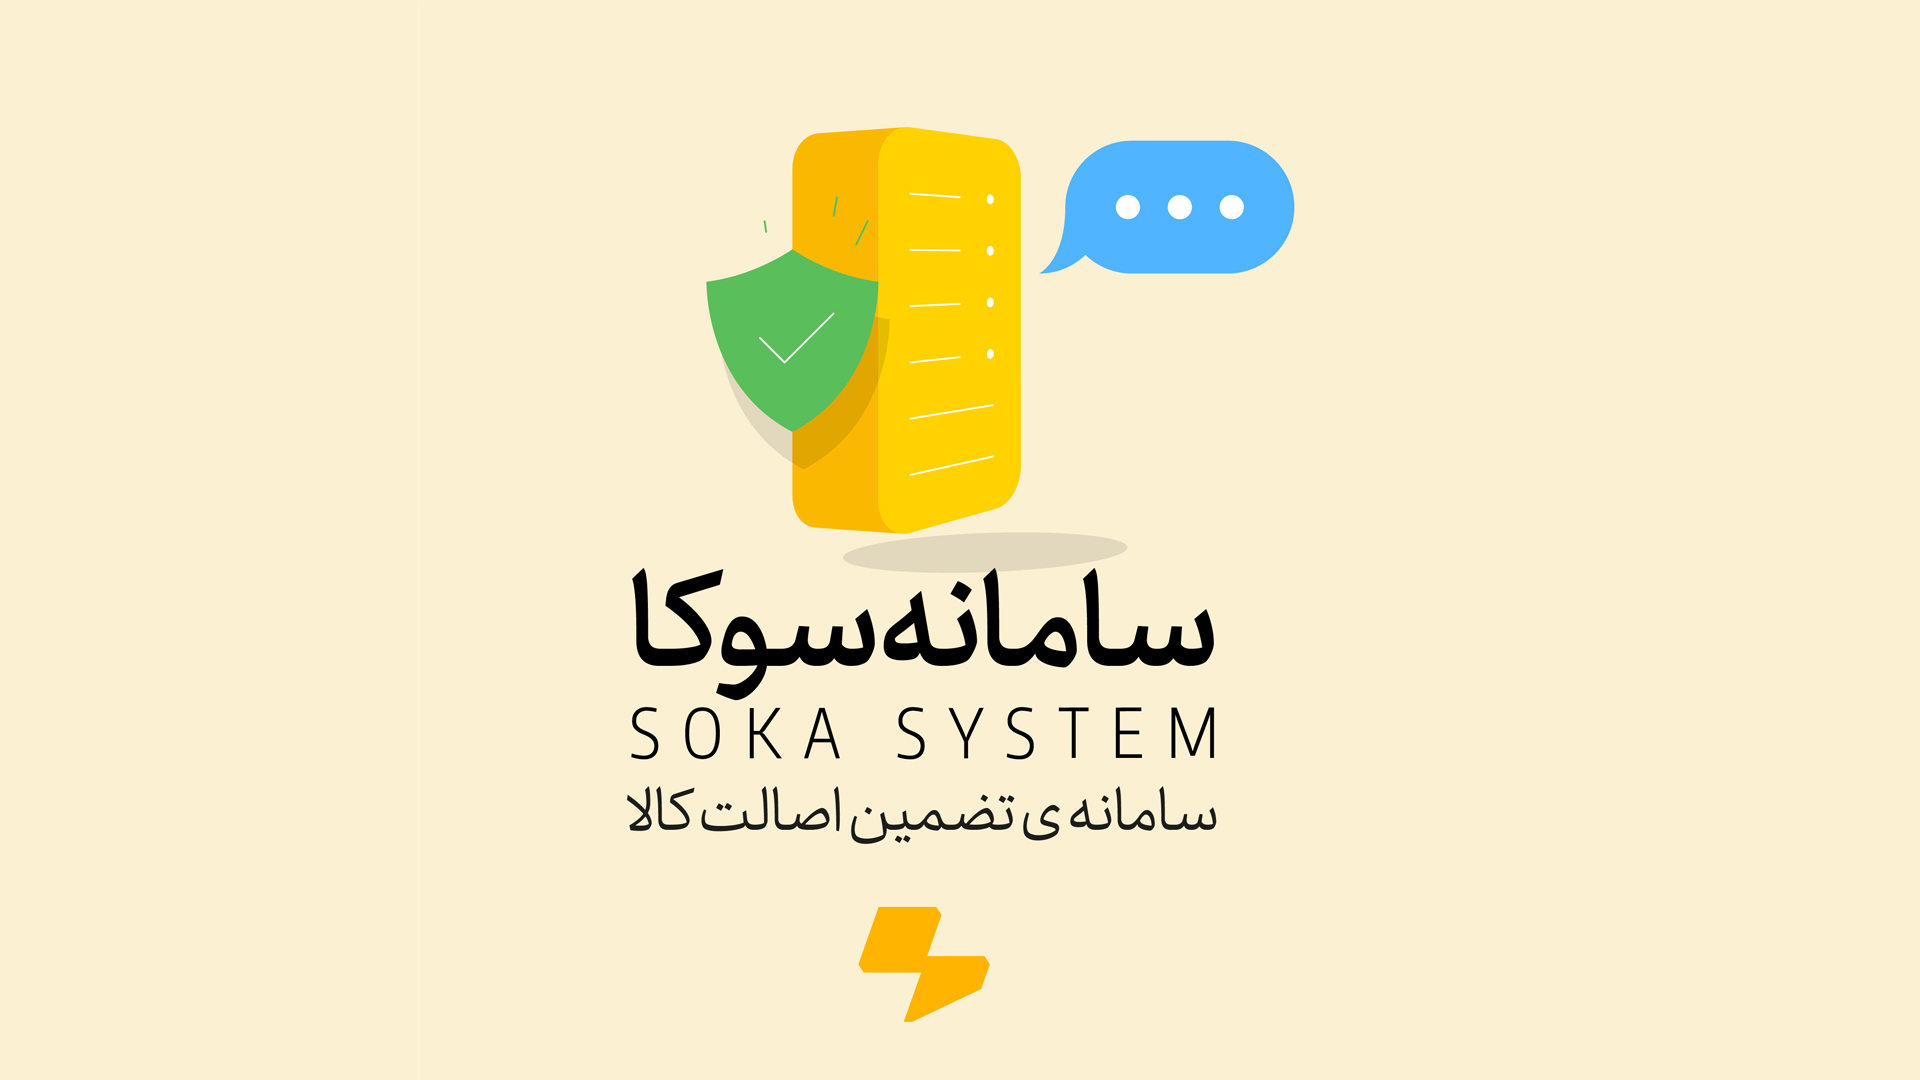 نظام سوکا ونظام الرسائل القصیرة لضمان أصالة المنتج